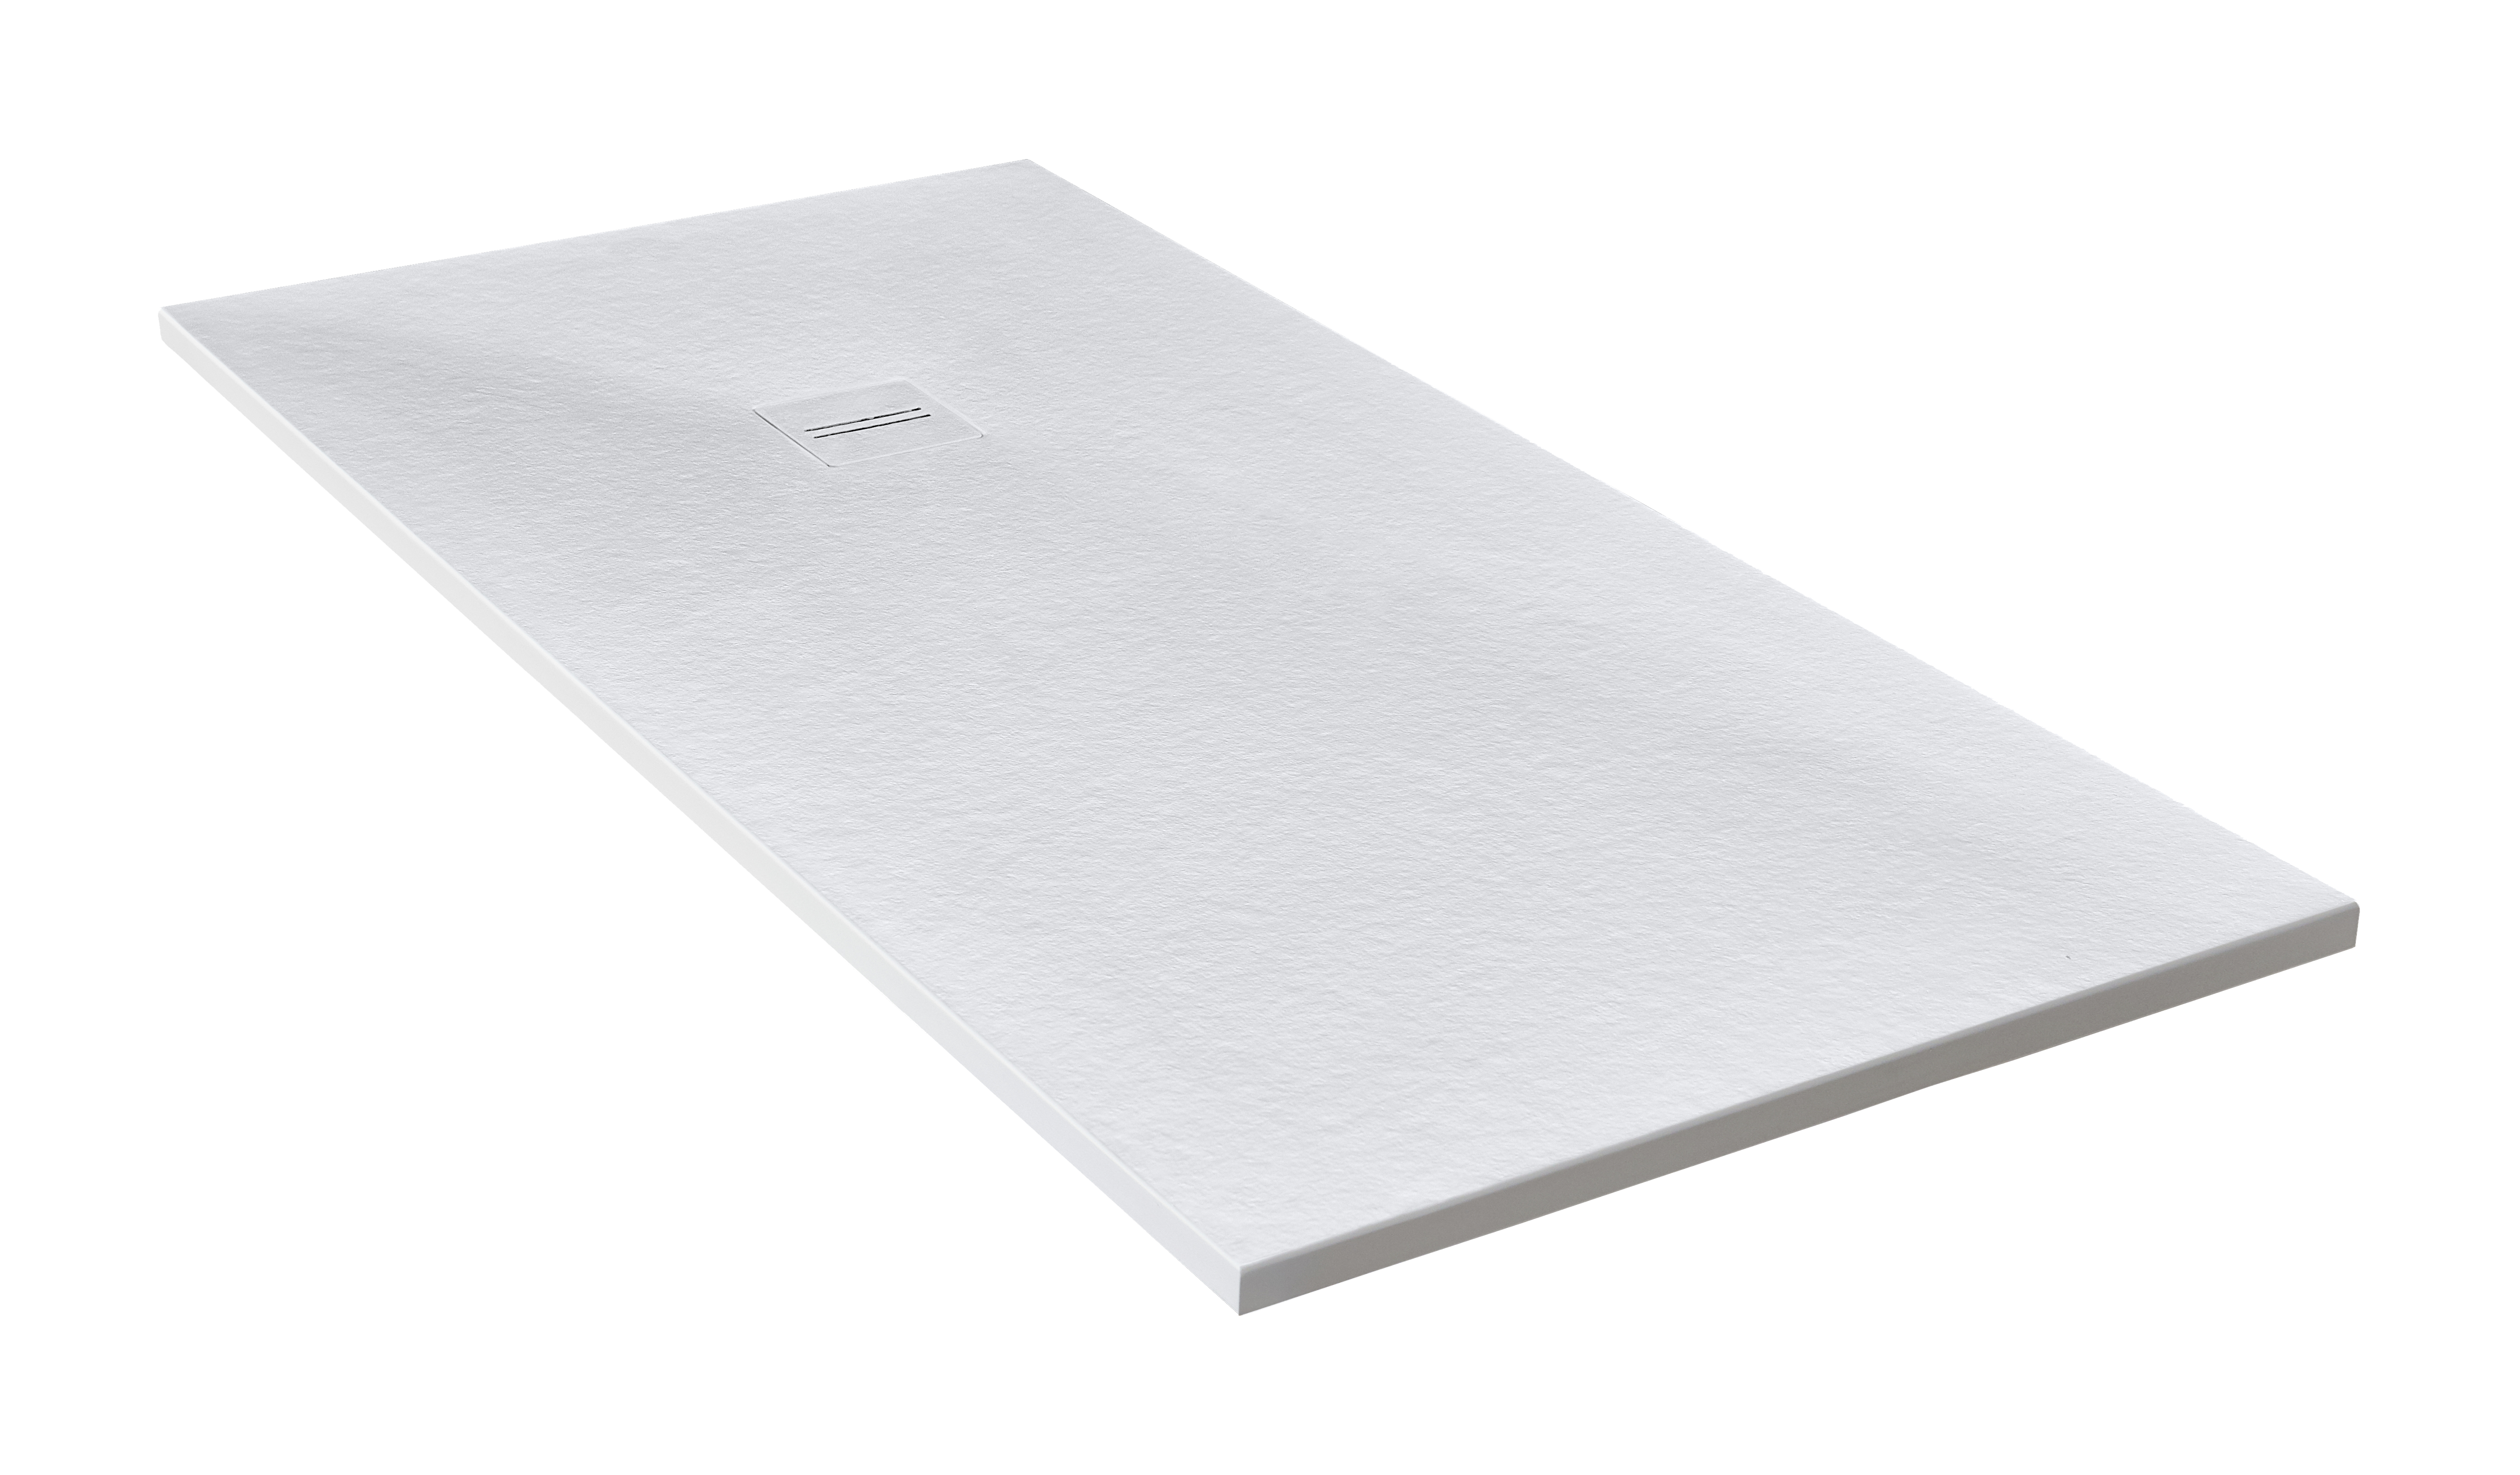 Plato de ducha cosmos 160x90 cm blanco